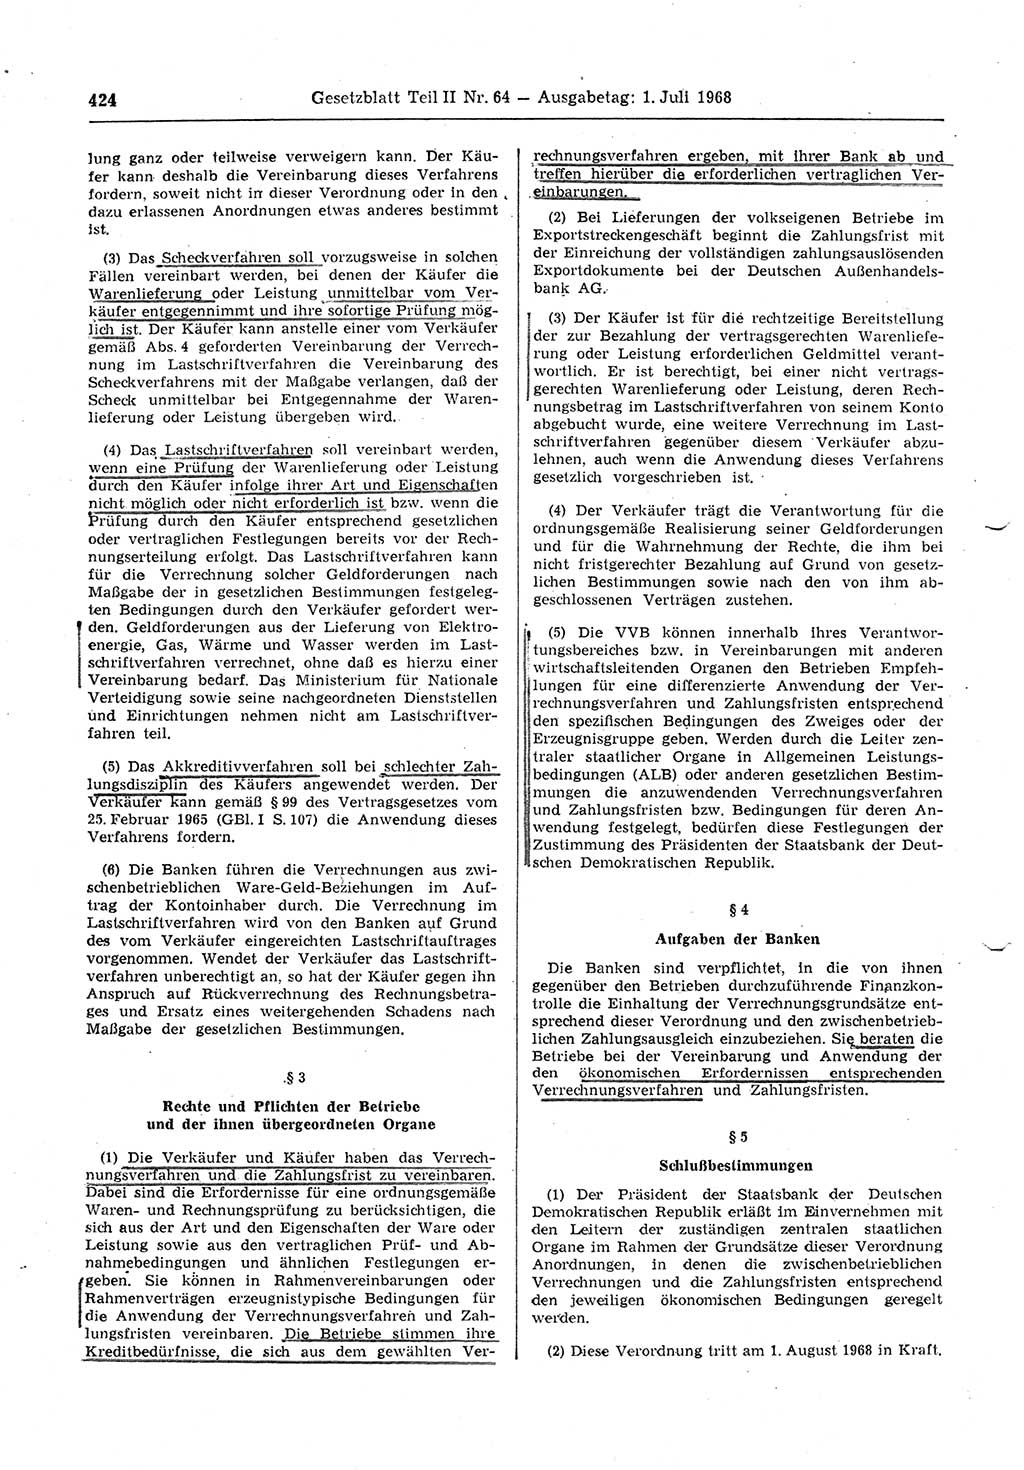 Gesetzblatt (GBl.) der Deutschen Demokratischen Republik (DDR) Teil ⅠⅠ 1968, Seite 424 (GBl. DDR ⅠⅠ 1968, S. 424)